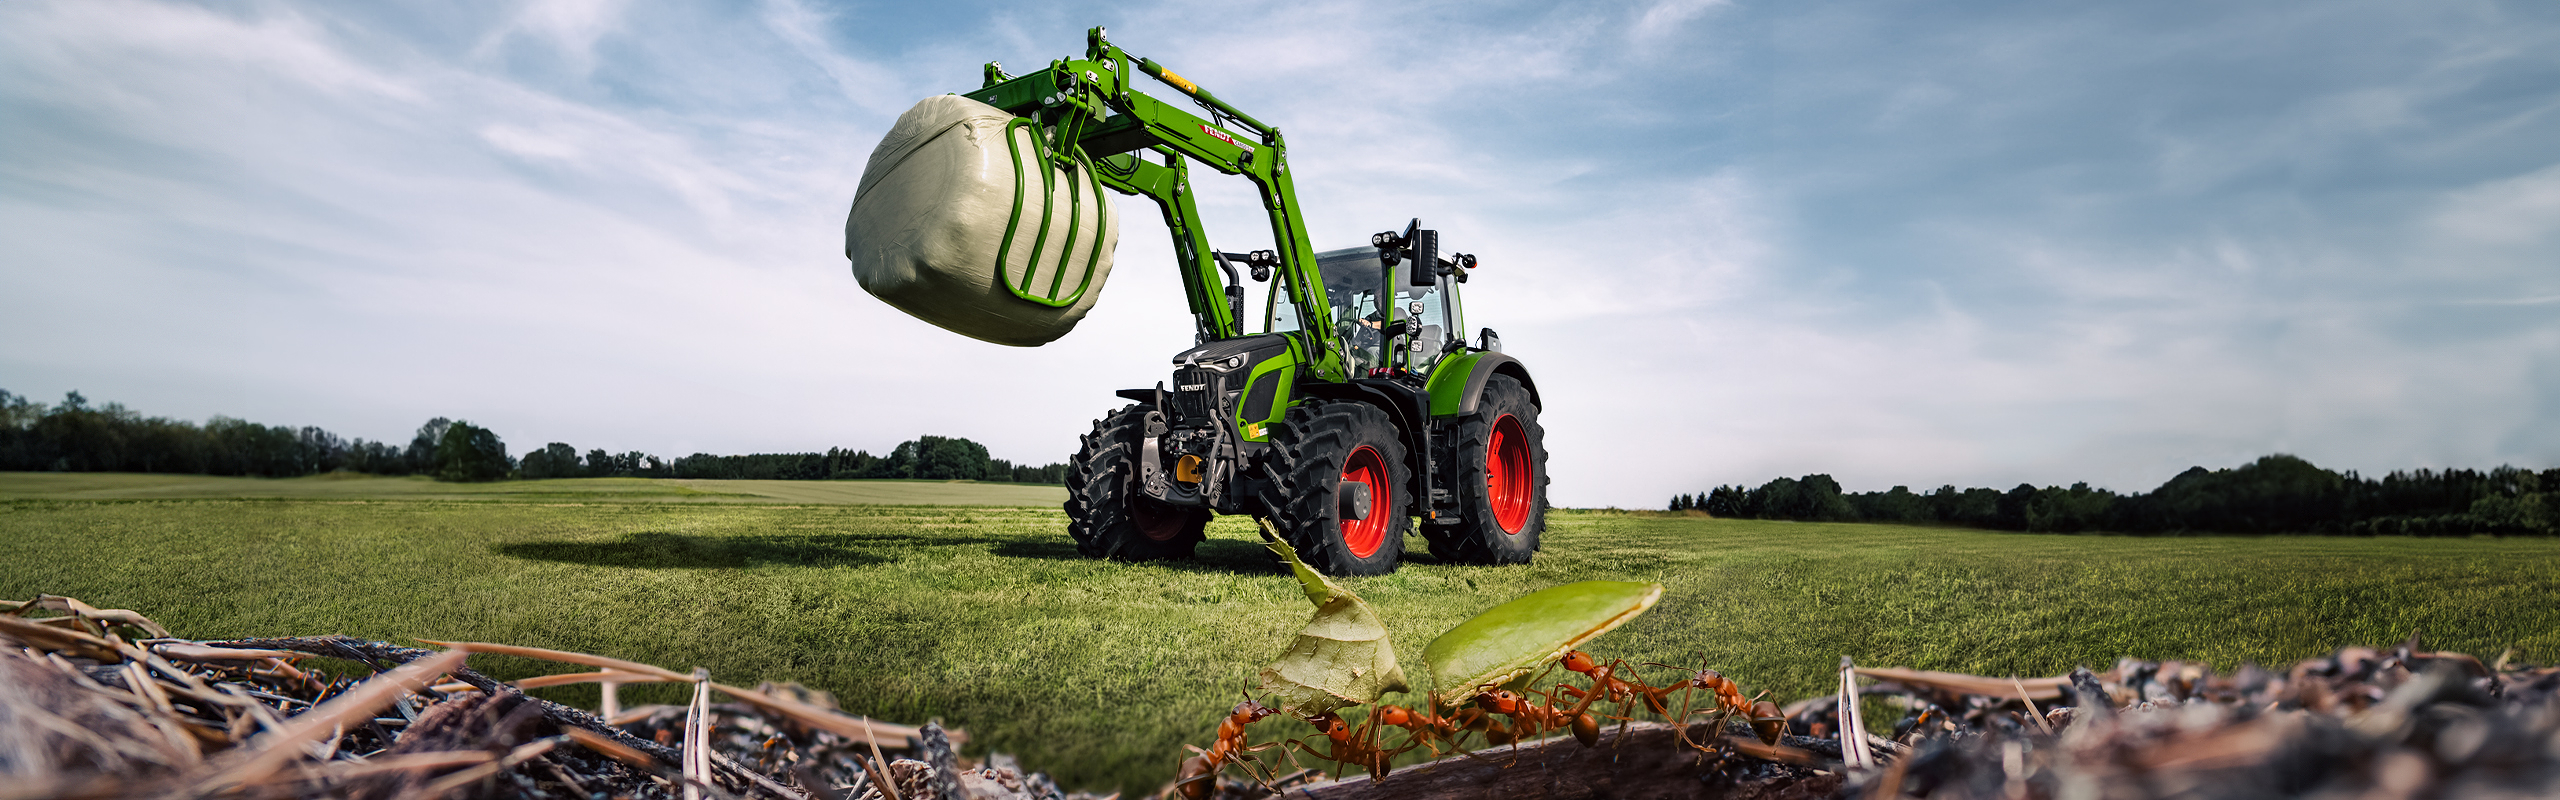 En Fendt 600 Vario-traktor står på marken og løfter en siloballe. Man kan se myrer i forgrunden.